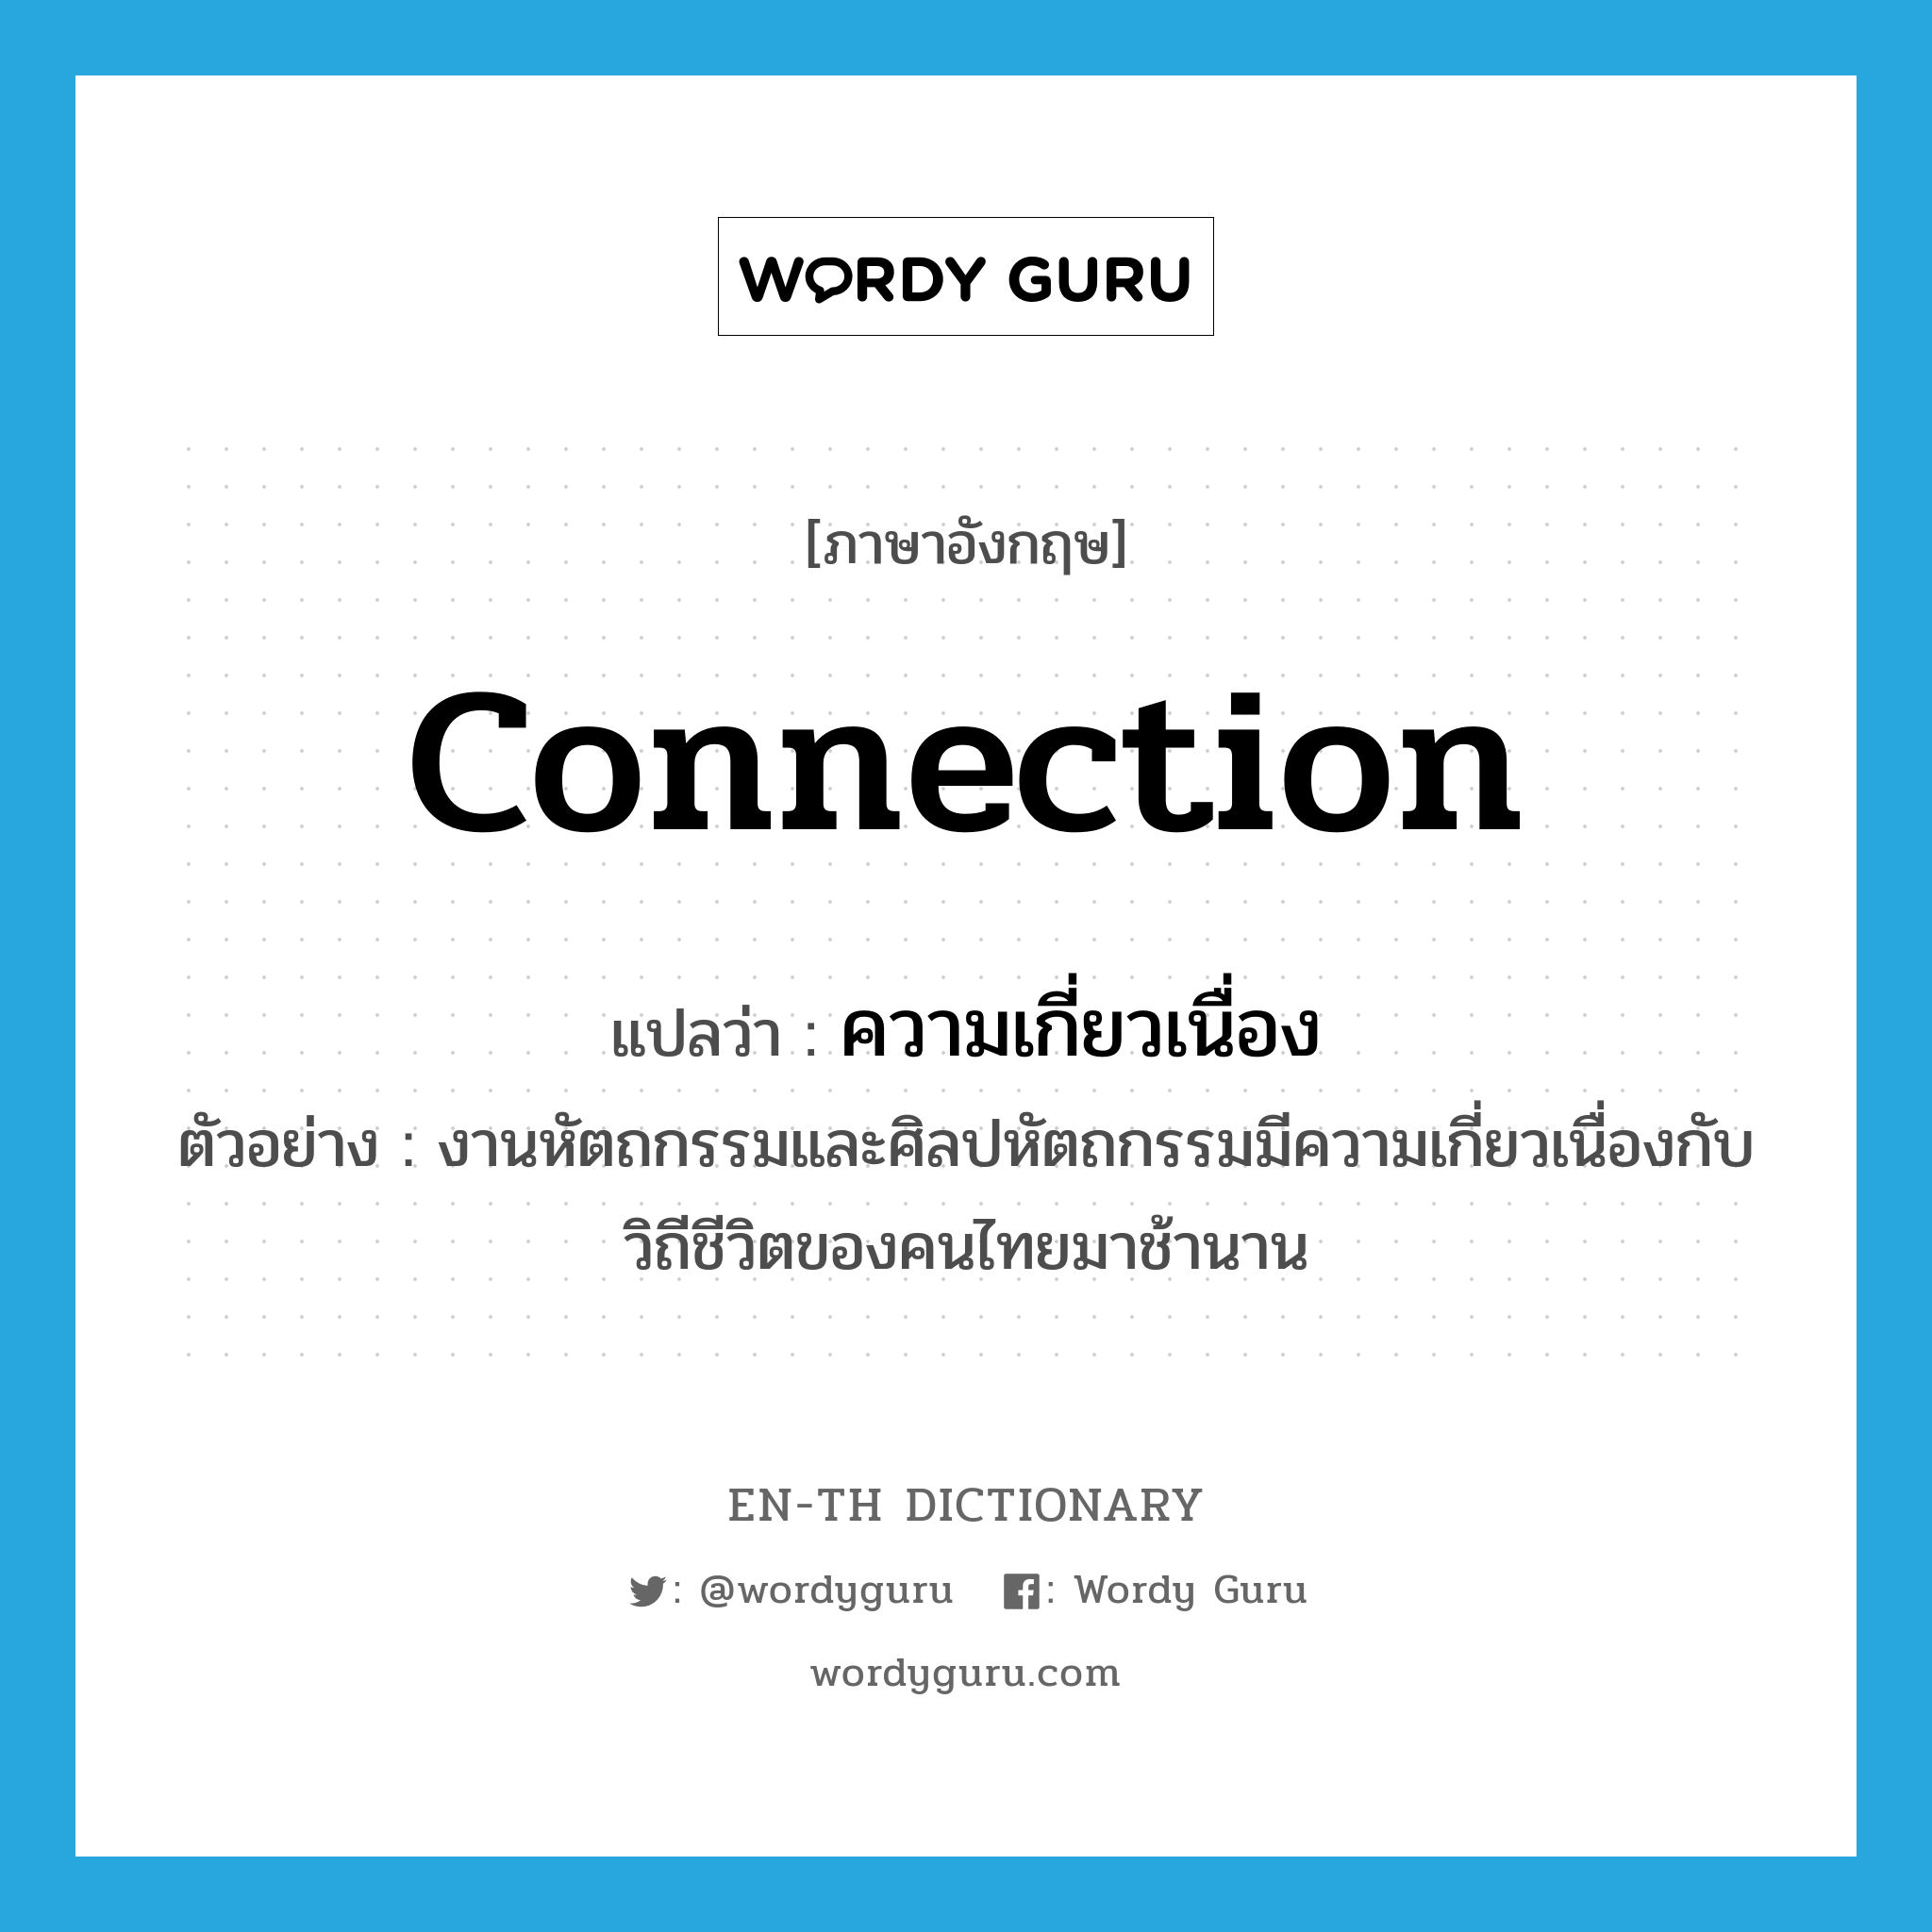 ความเกี่ยวเนื่อง ภาษาอังกฤษ?, คำศัพท์ภาษาอังกฤษ ความเกี่ยวเนื่อง แปลว่า connection ประเภท N ตัวอย่าง งานหัตถกรรมและศิลปหัตถกรรมมีความเกี่ยวเนื่องกับวิถีชีวิตของคนไทยมาช้านาน หมวด N